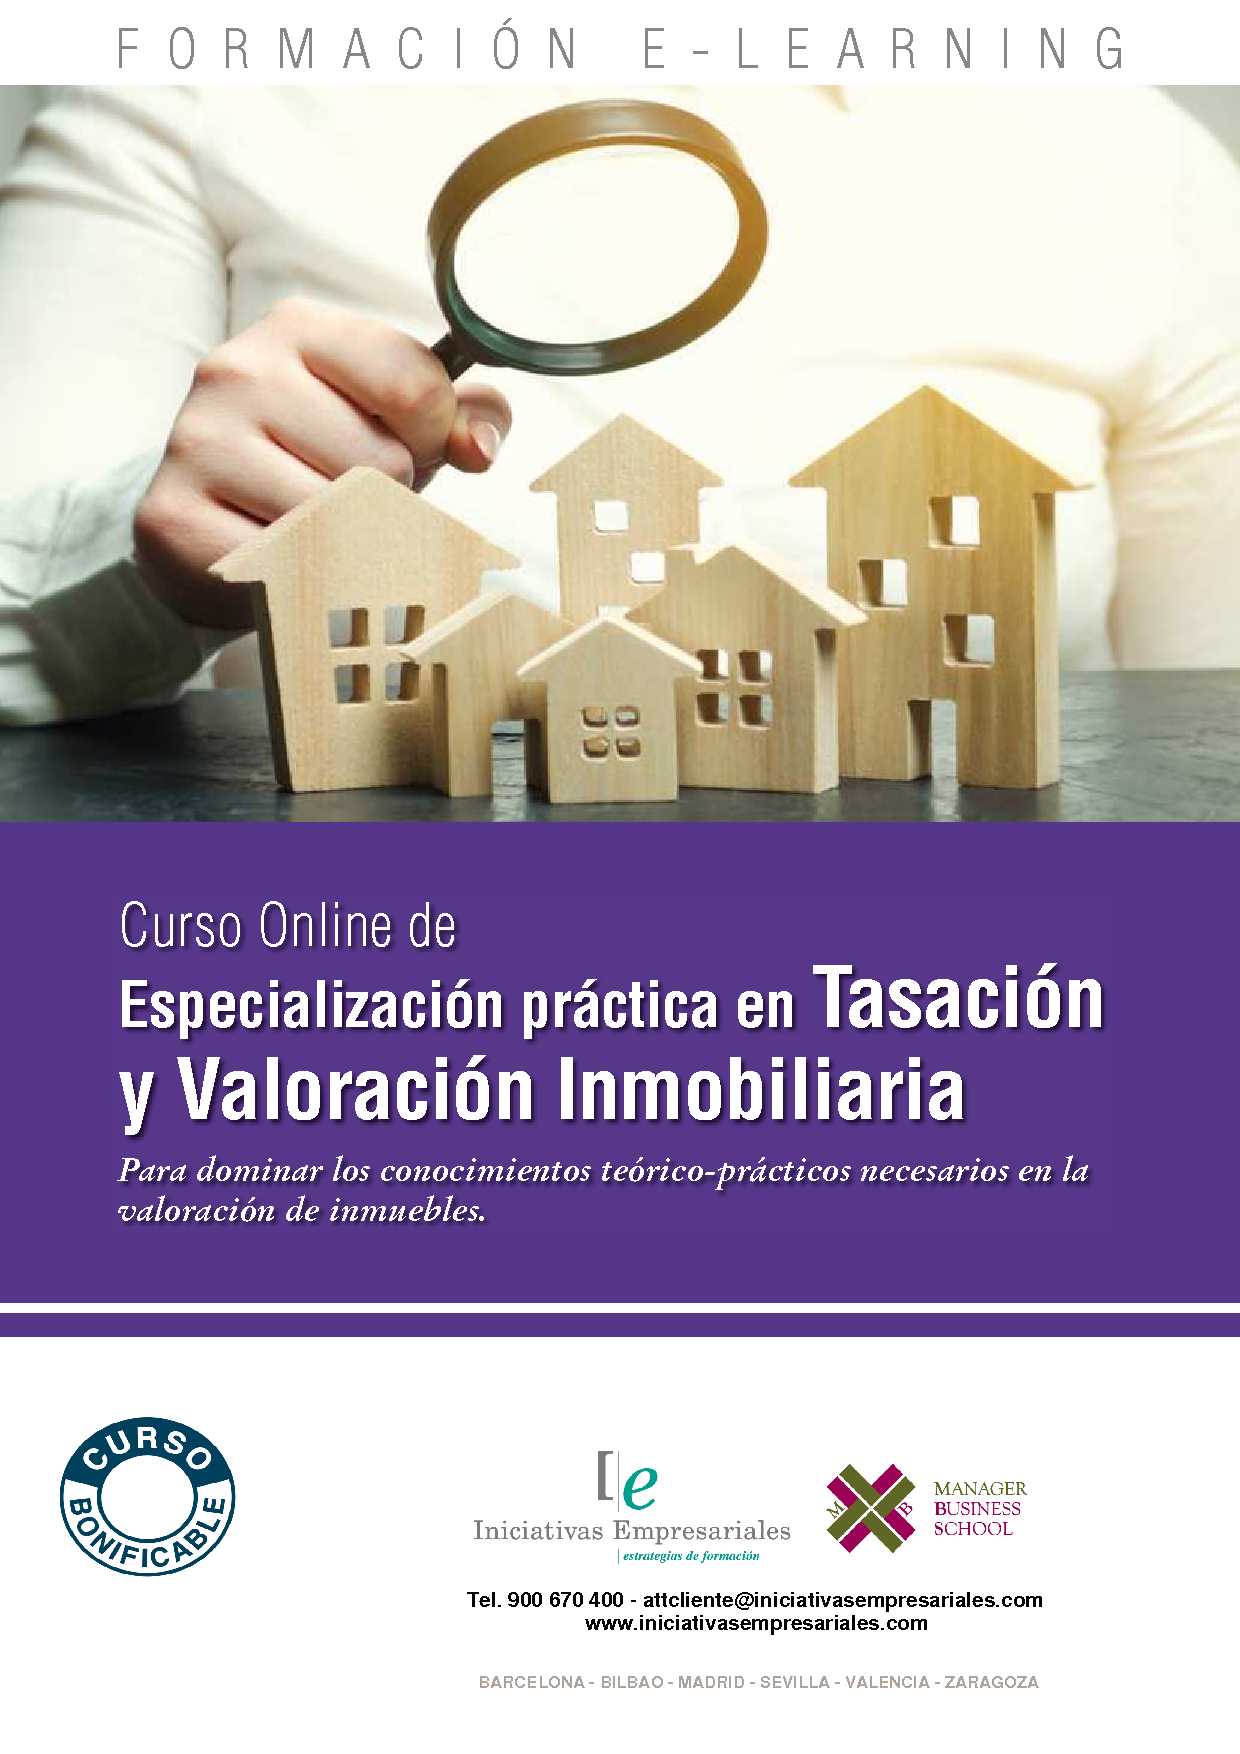 Especialización práctica en Tasación y Valoración Inmobiliaria